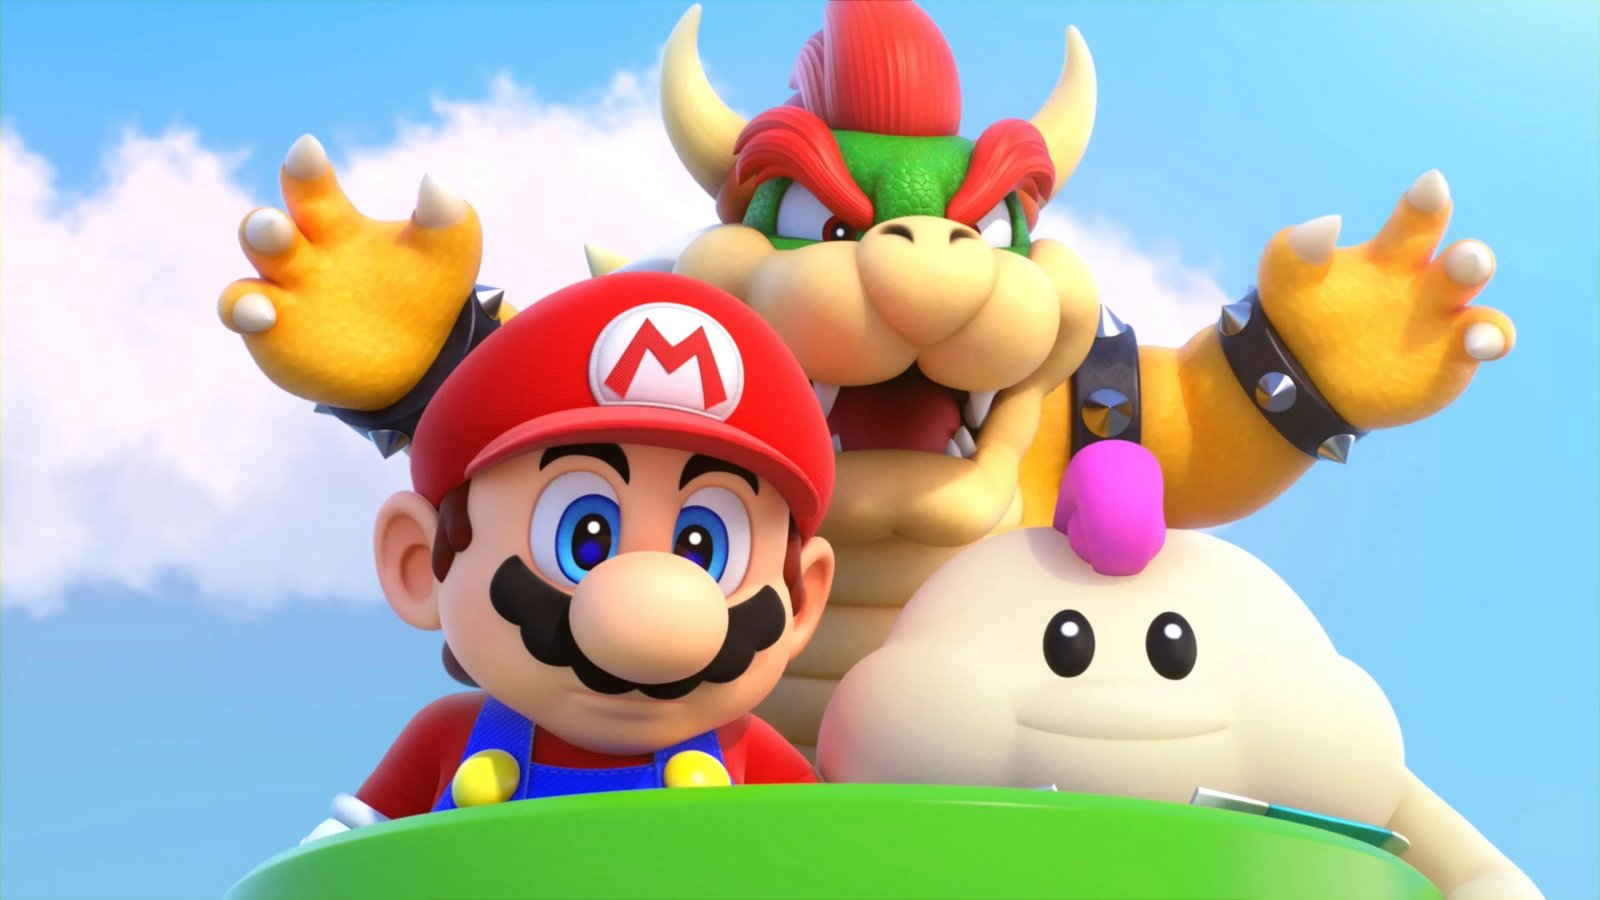 Classifica eShop, Super Mario RPG resta al comando e la top 10 cambia poco